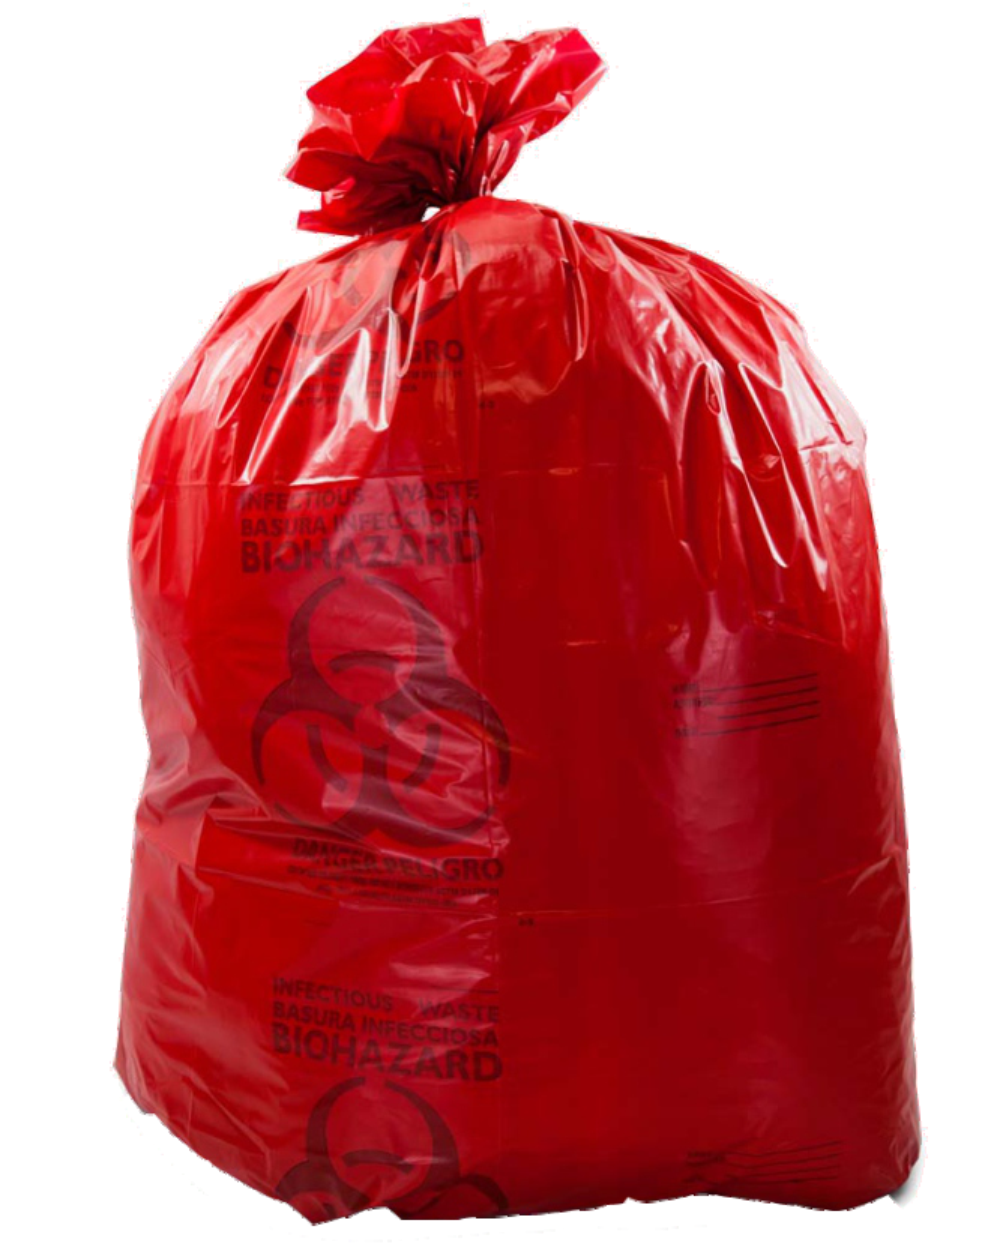 red-garbage-bag